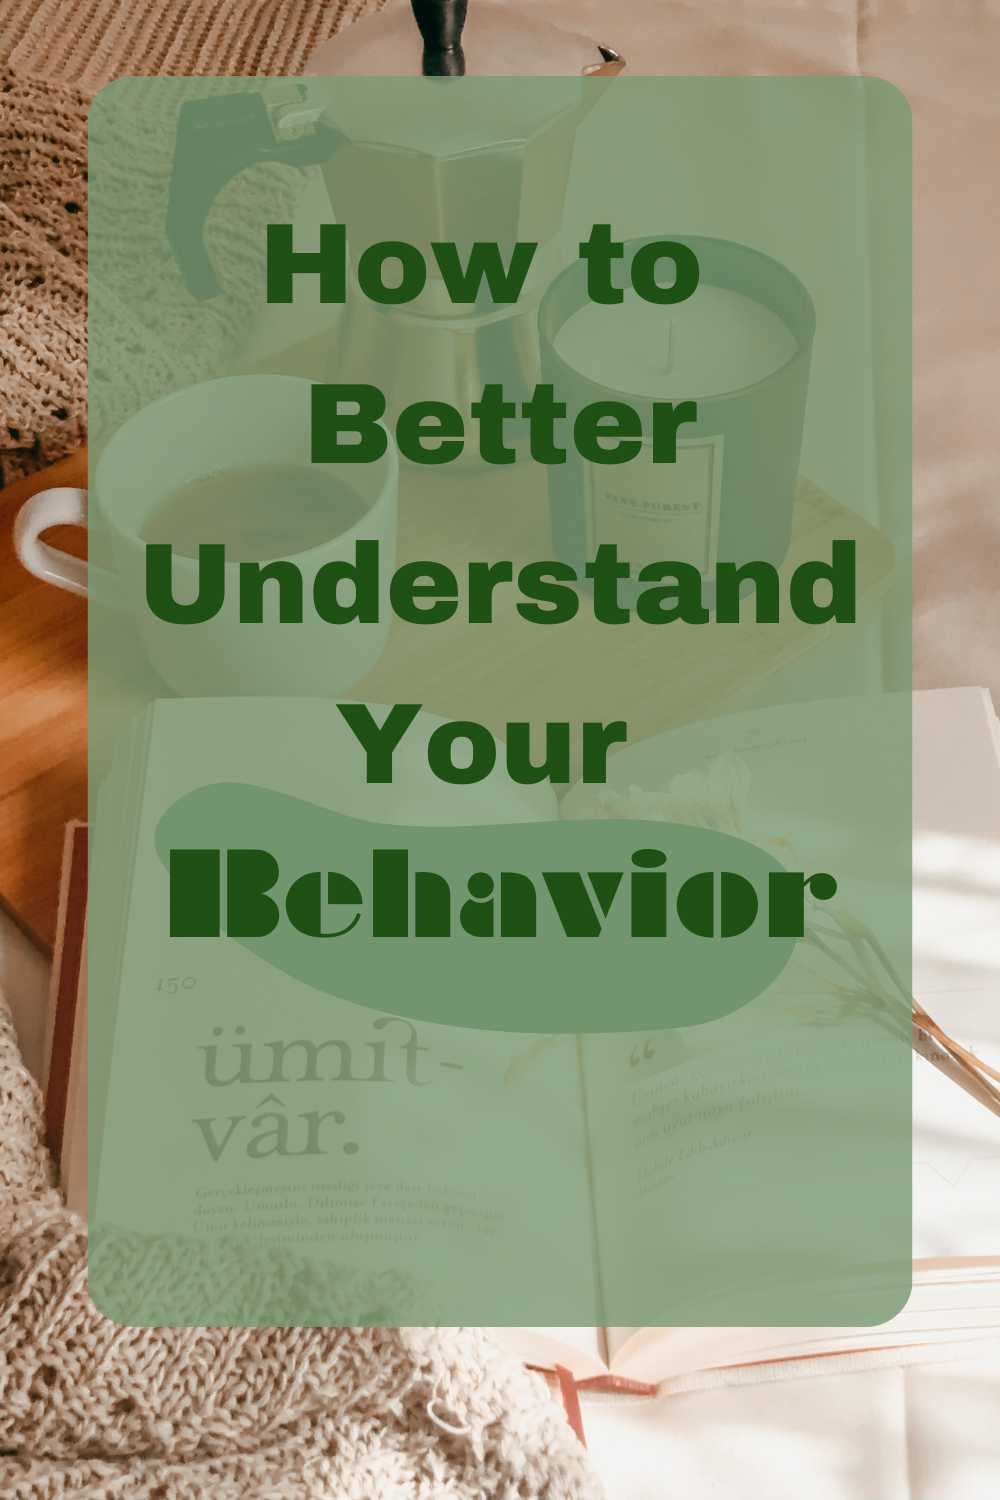 How to Better understand your behavior